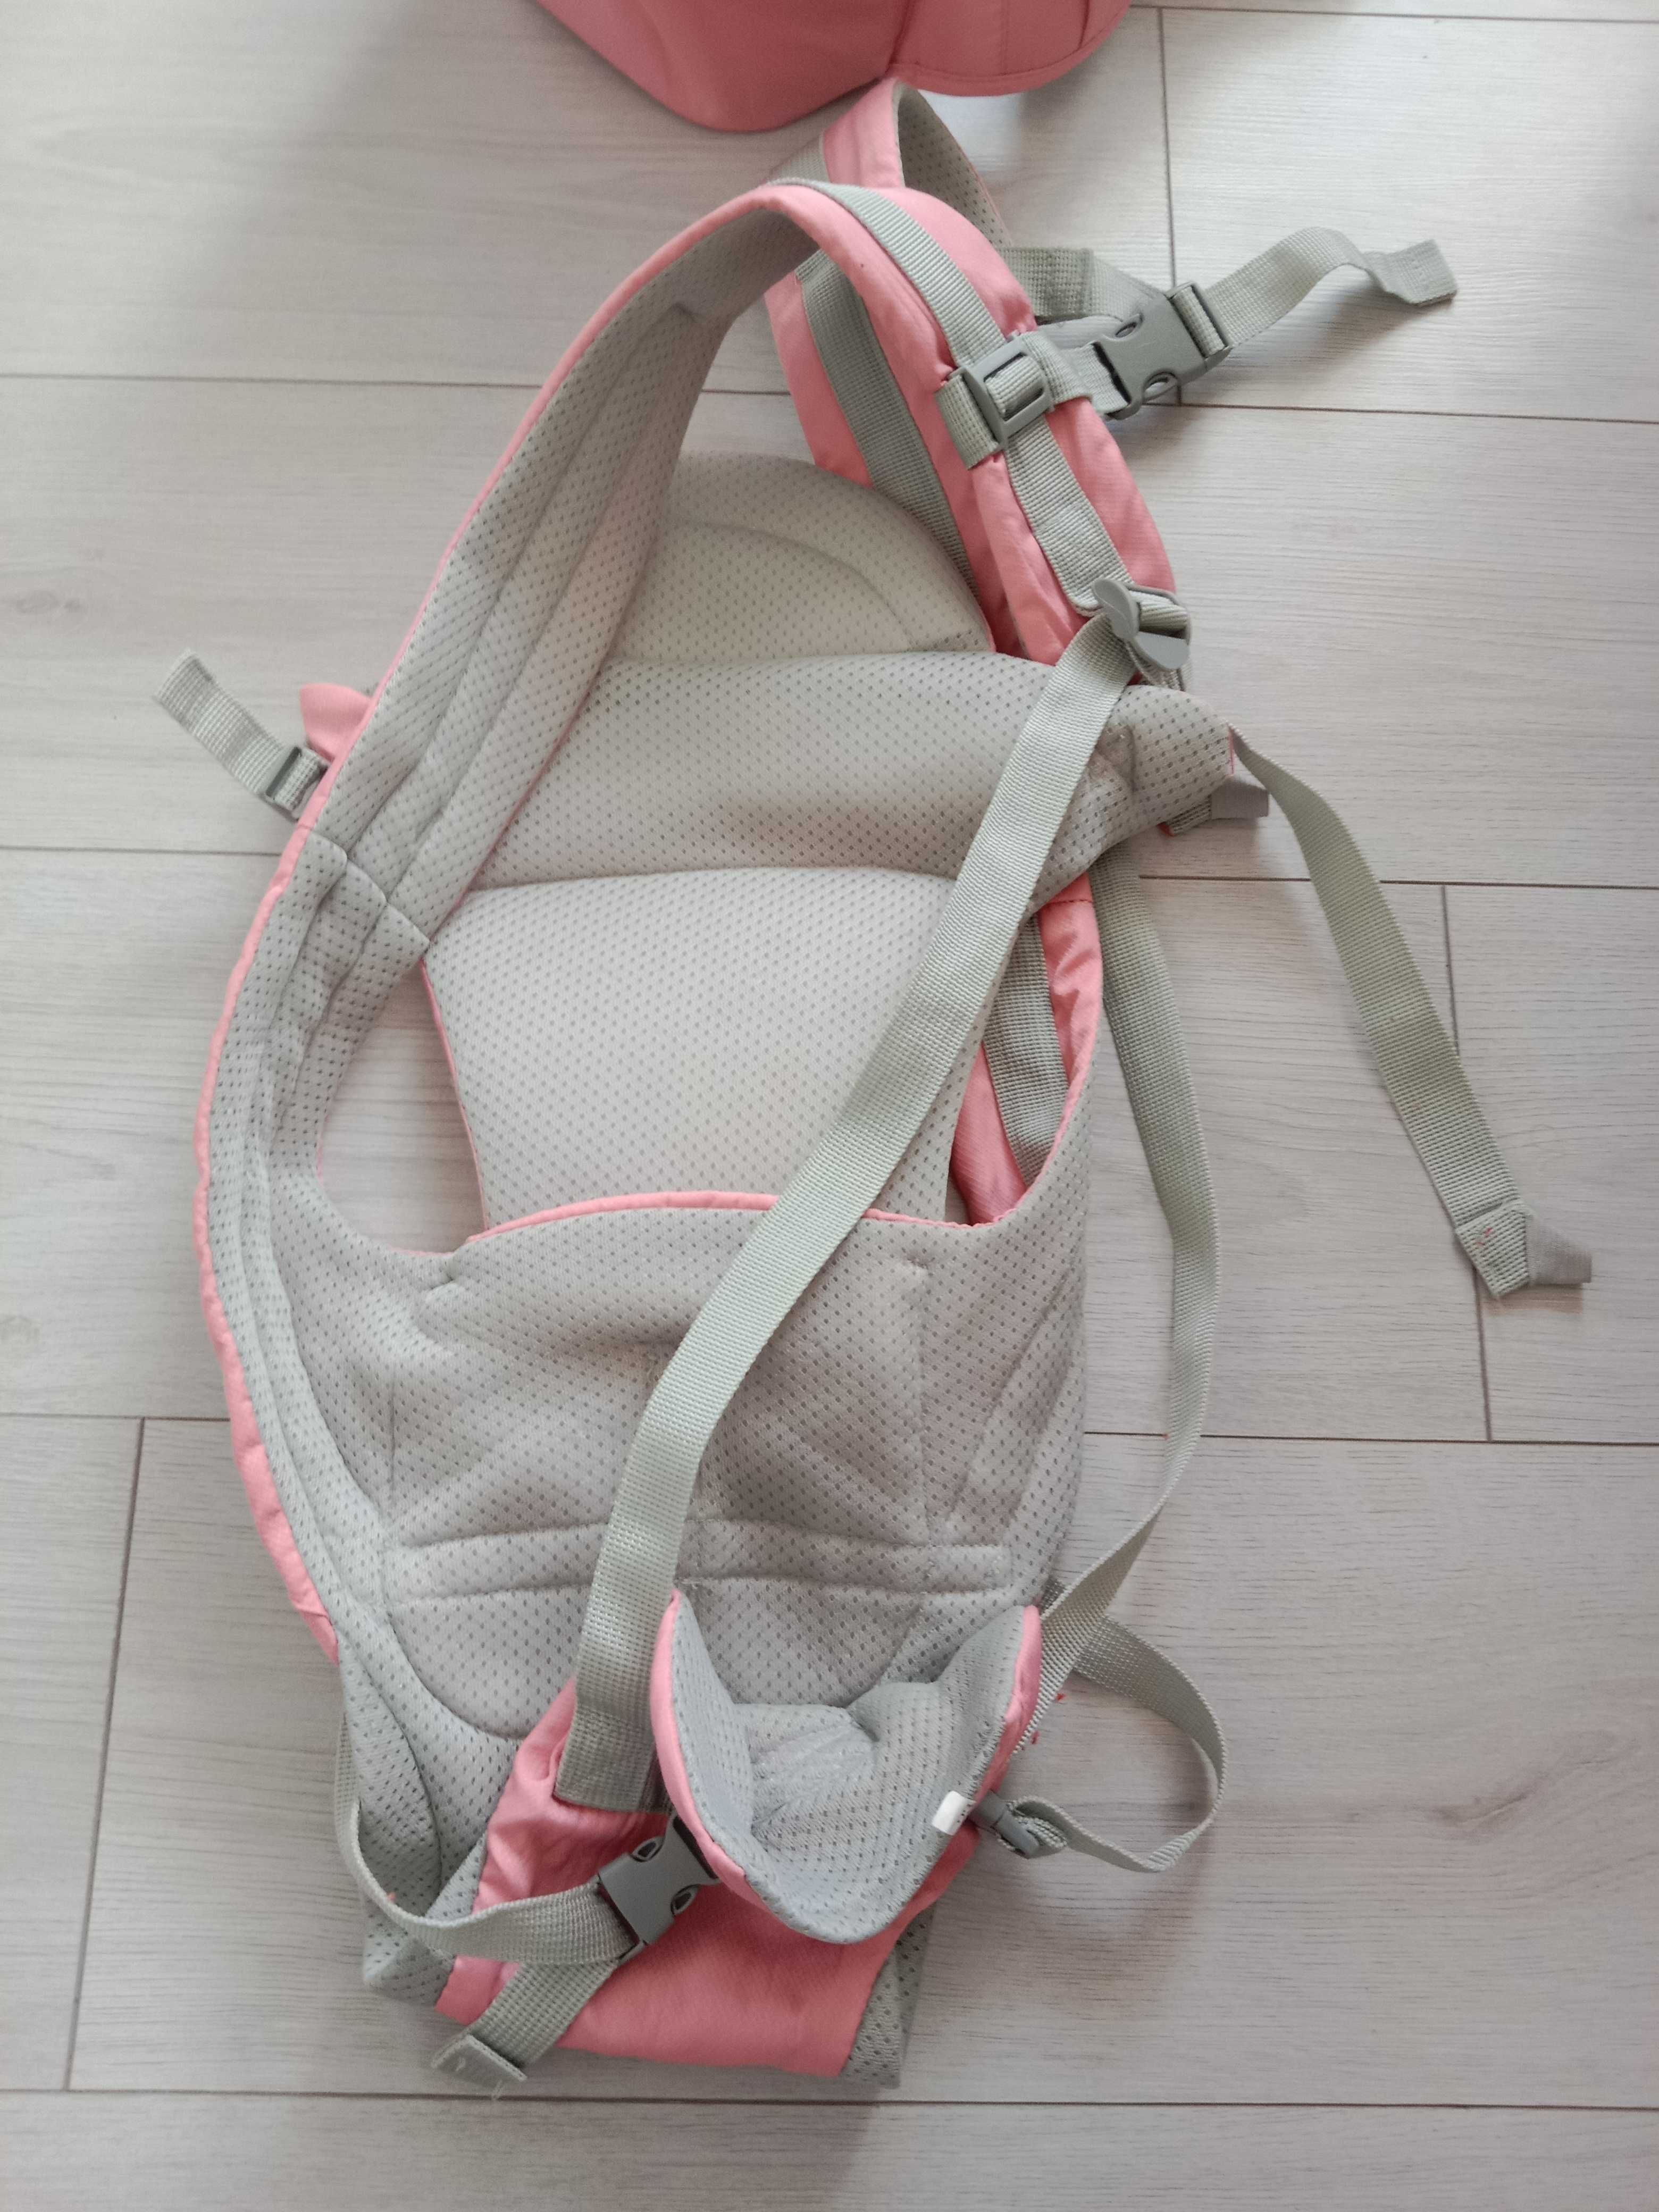 Хипсит эрго рюкзак Qinhu розовый переноска для малыша